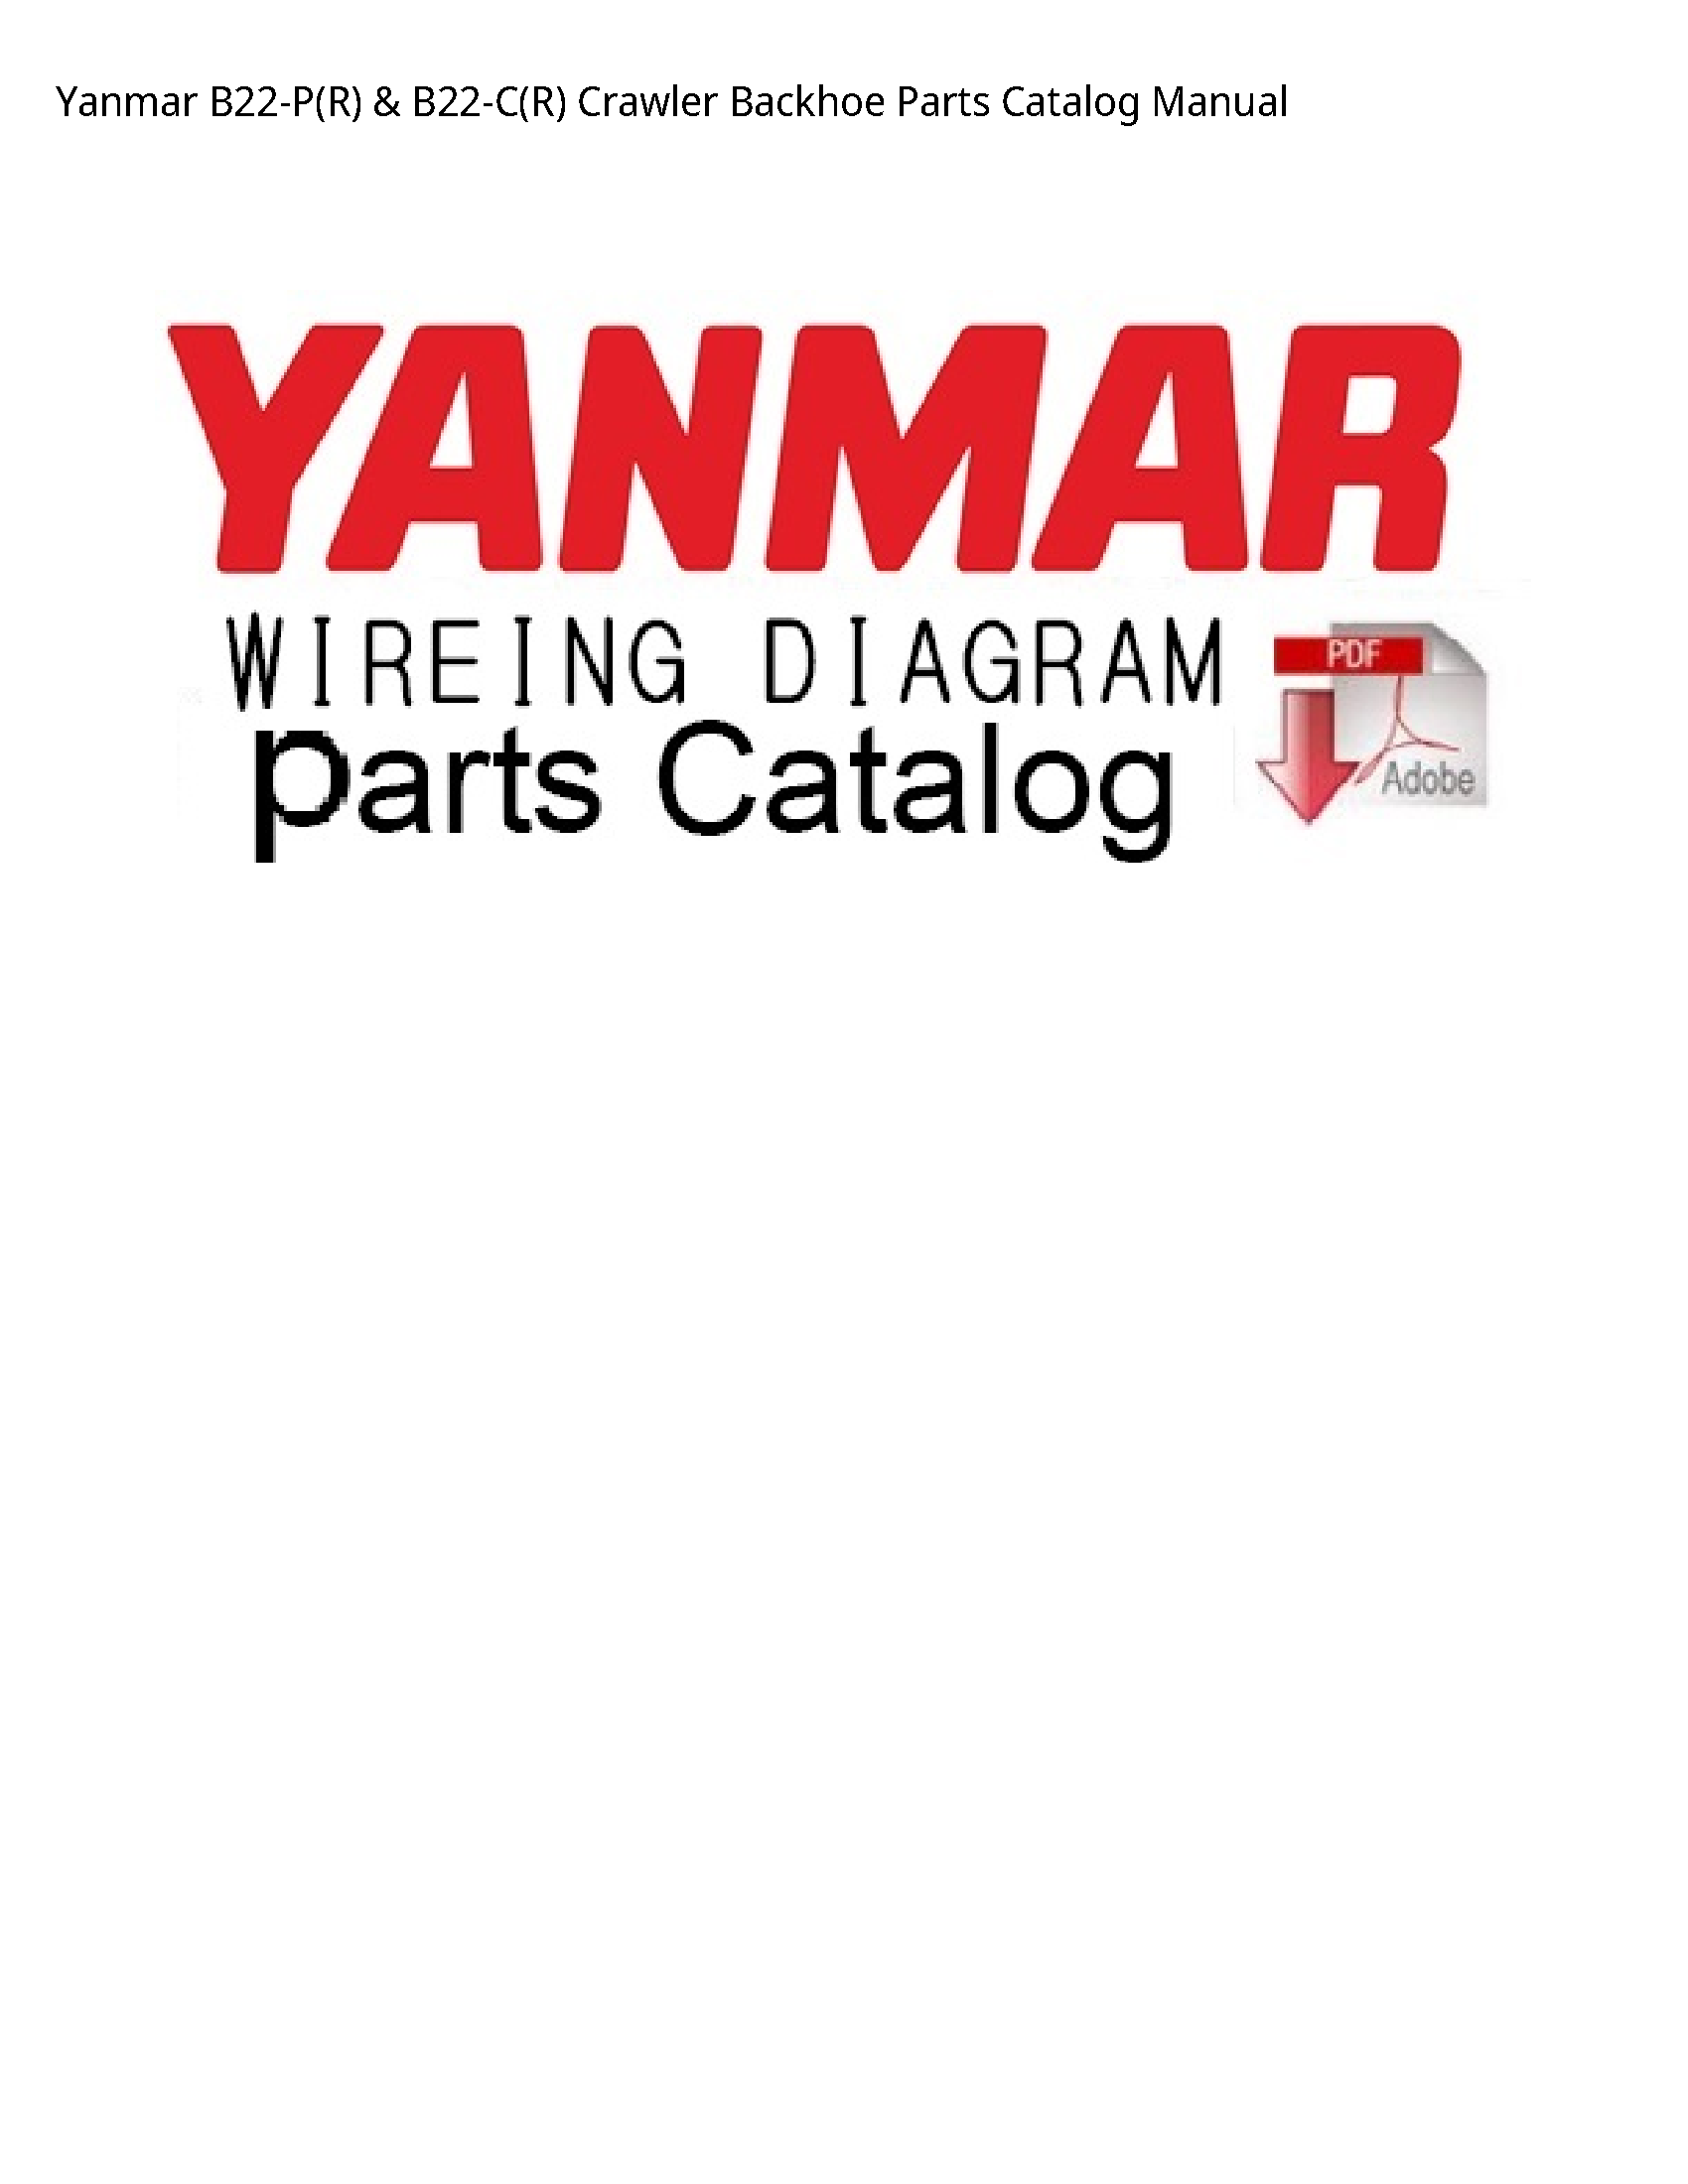 Yanmar B22-P(R) Crawler Backhoe Parts Catalog manual